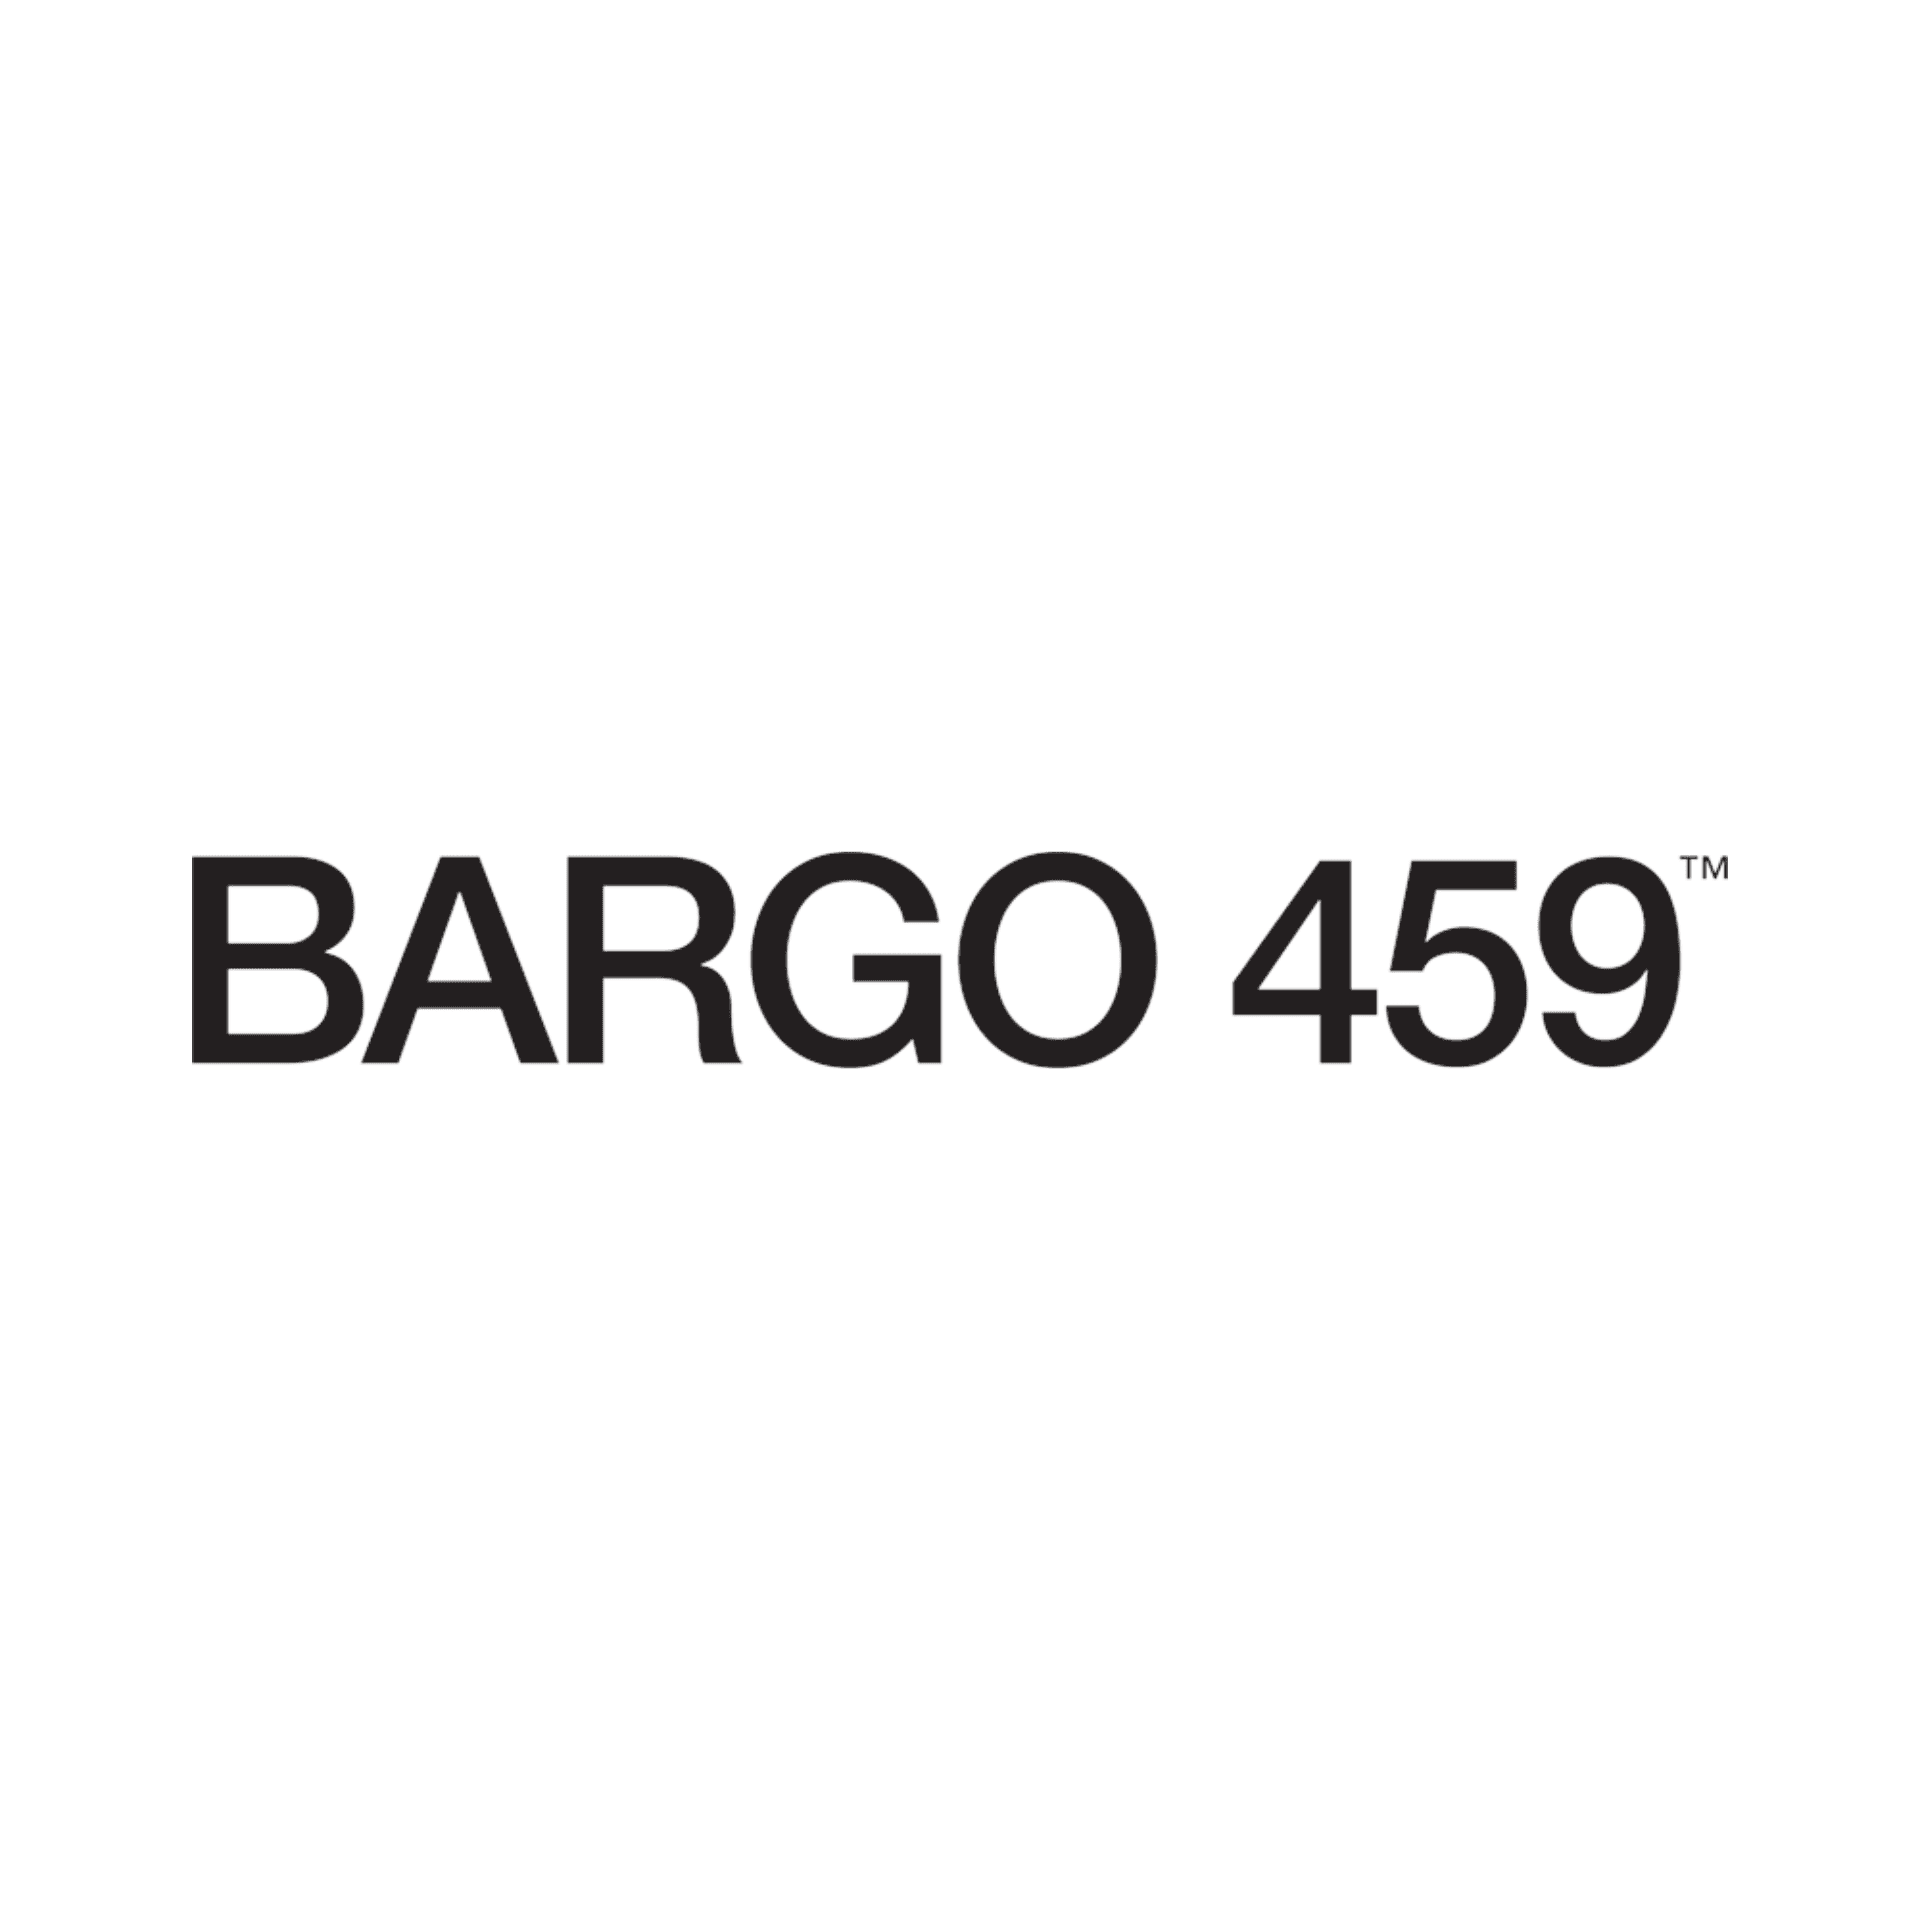 Bargo 459 b:w